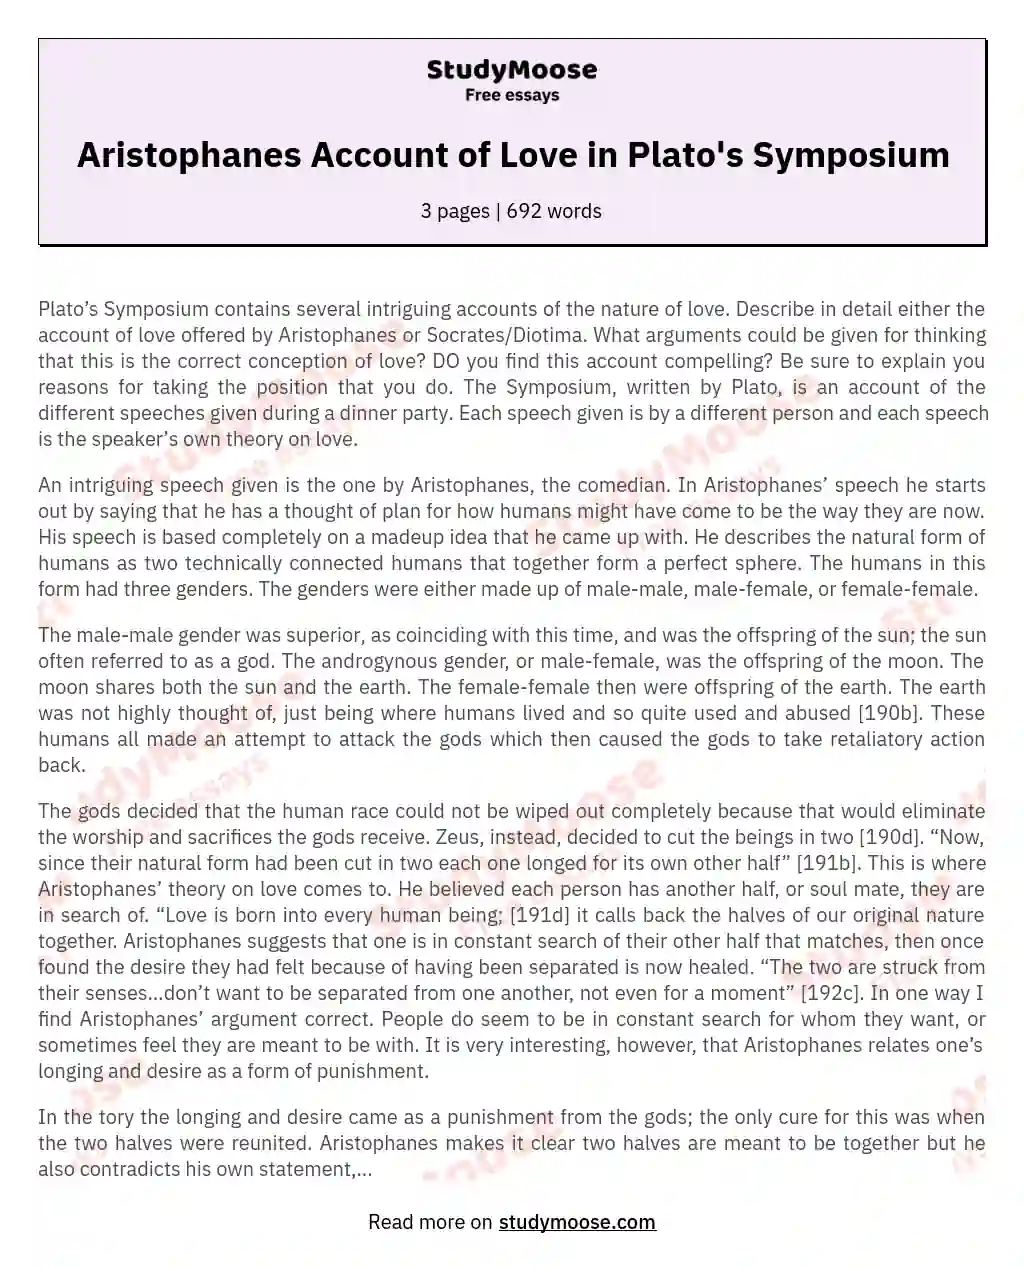 Aristophanes Account of Love in Plato's Symposium essay